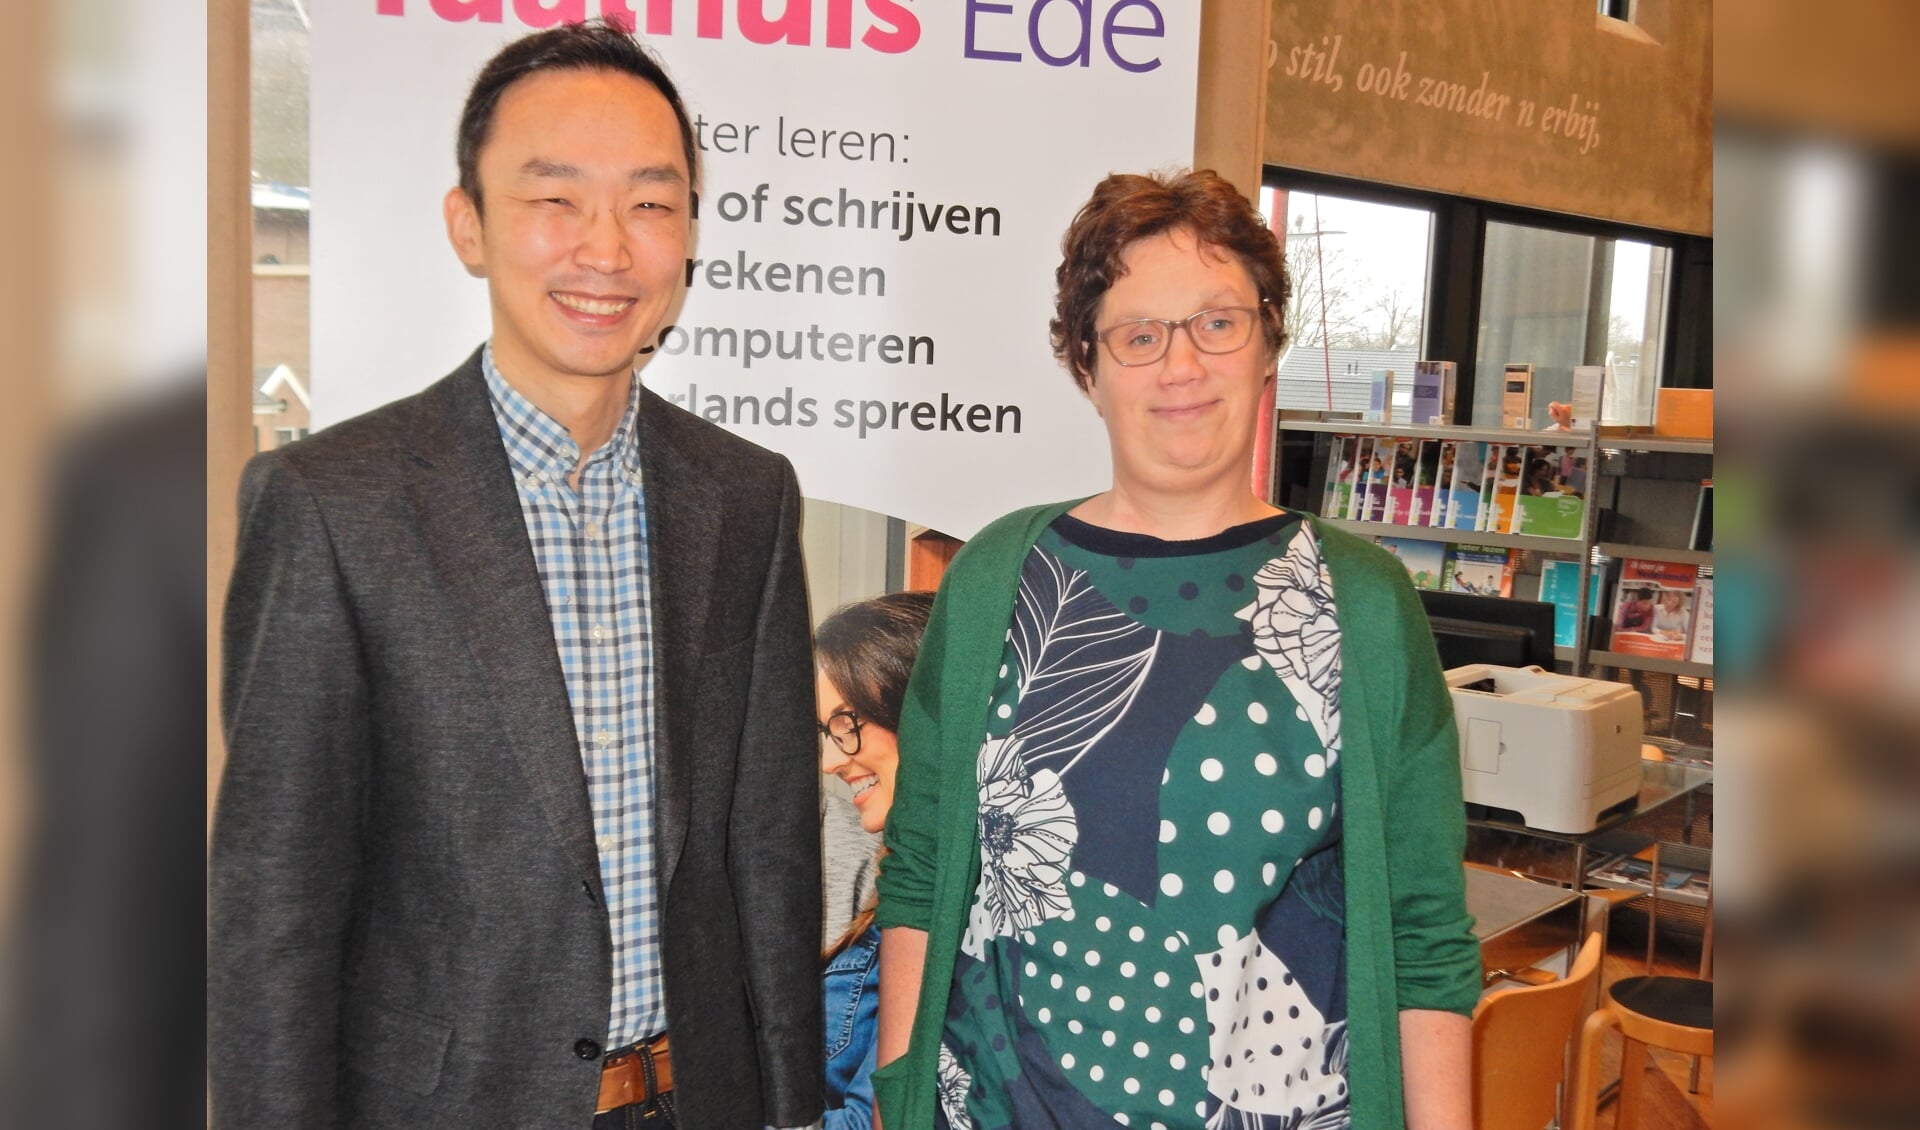 Links Jong Wan Wijters, rechts Esther In 't Veld